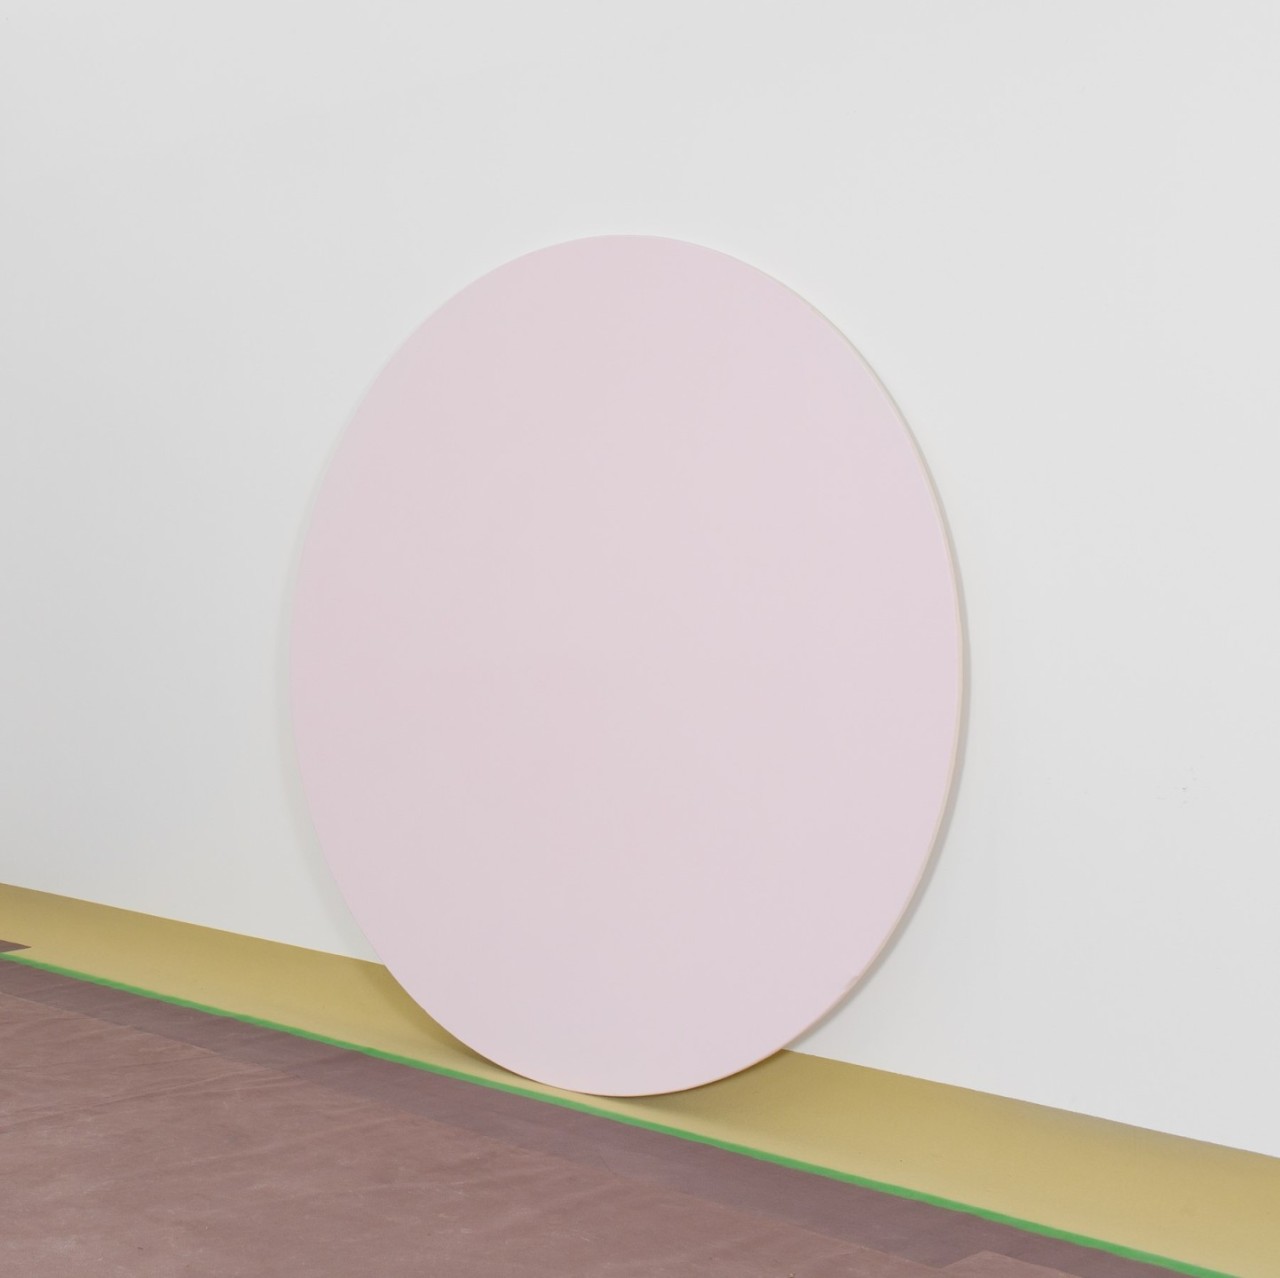 L'oeuvre est une peinture acrylique rose sur toile de coton de forme circulaire de 200 centimètre de diametre.